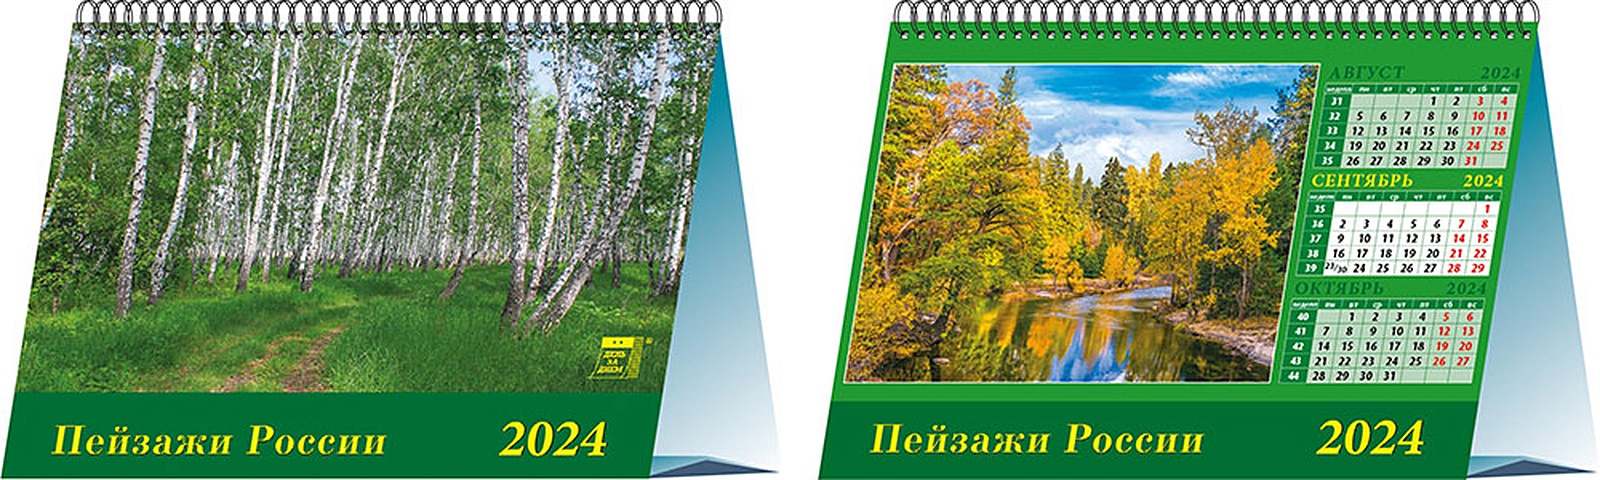 Календарь 2024г 200*140 Пейзажи России настольный, домик календарь настольный на 2023 год пейзажи россии